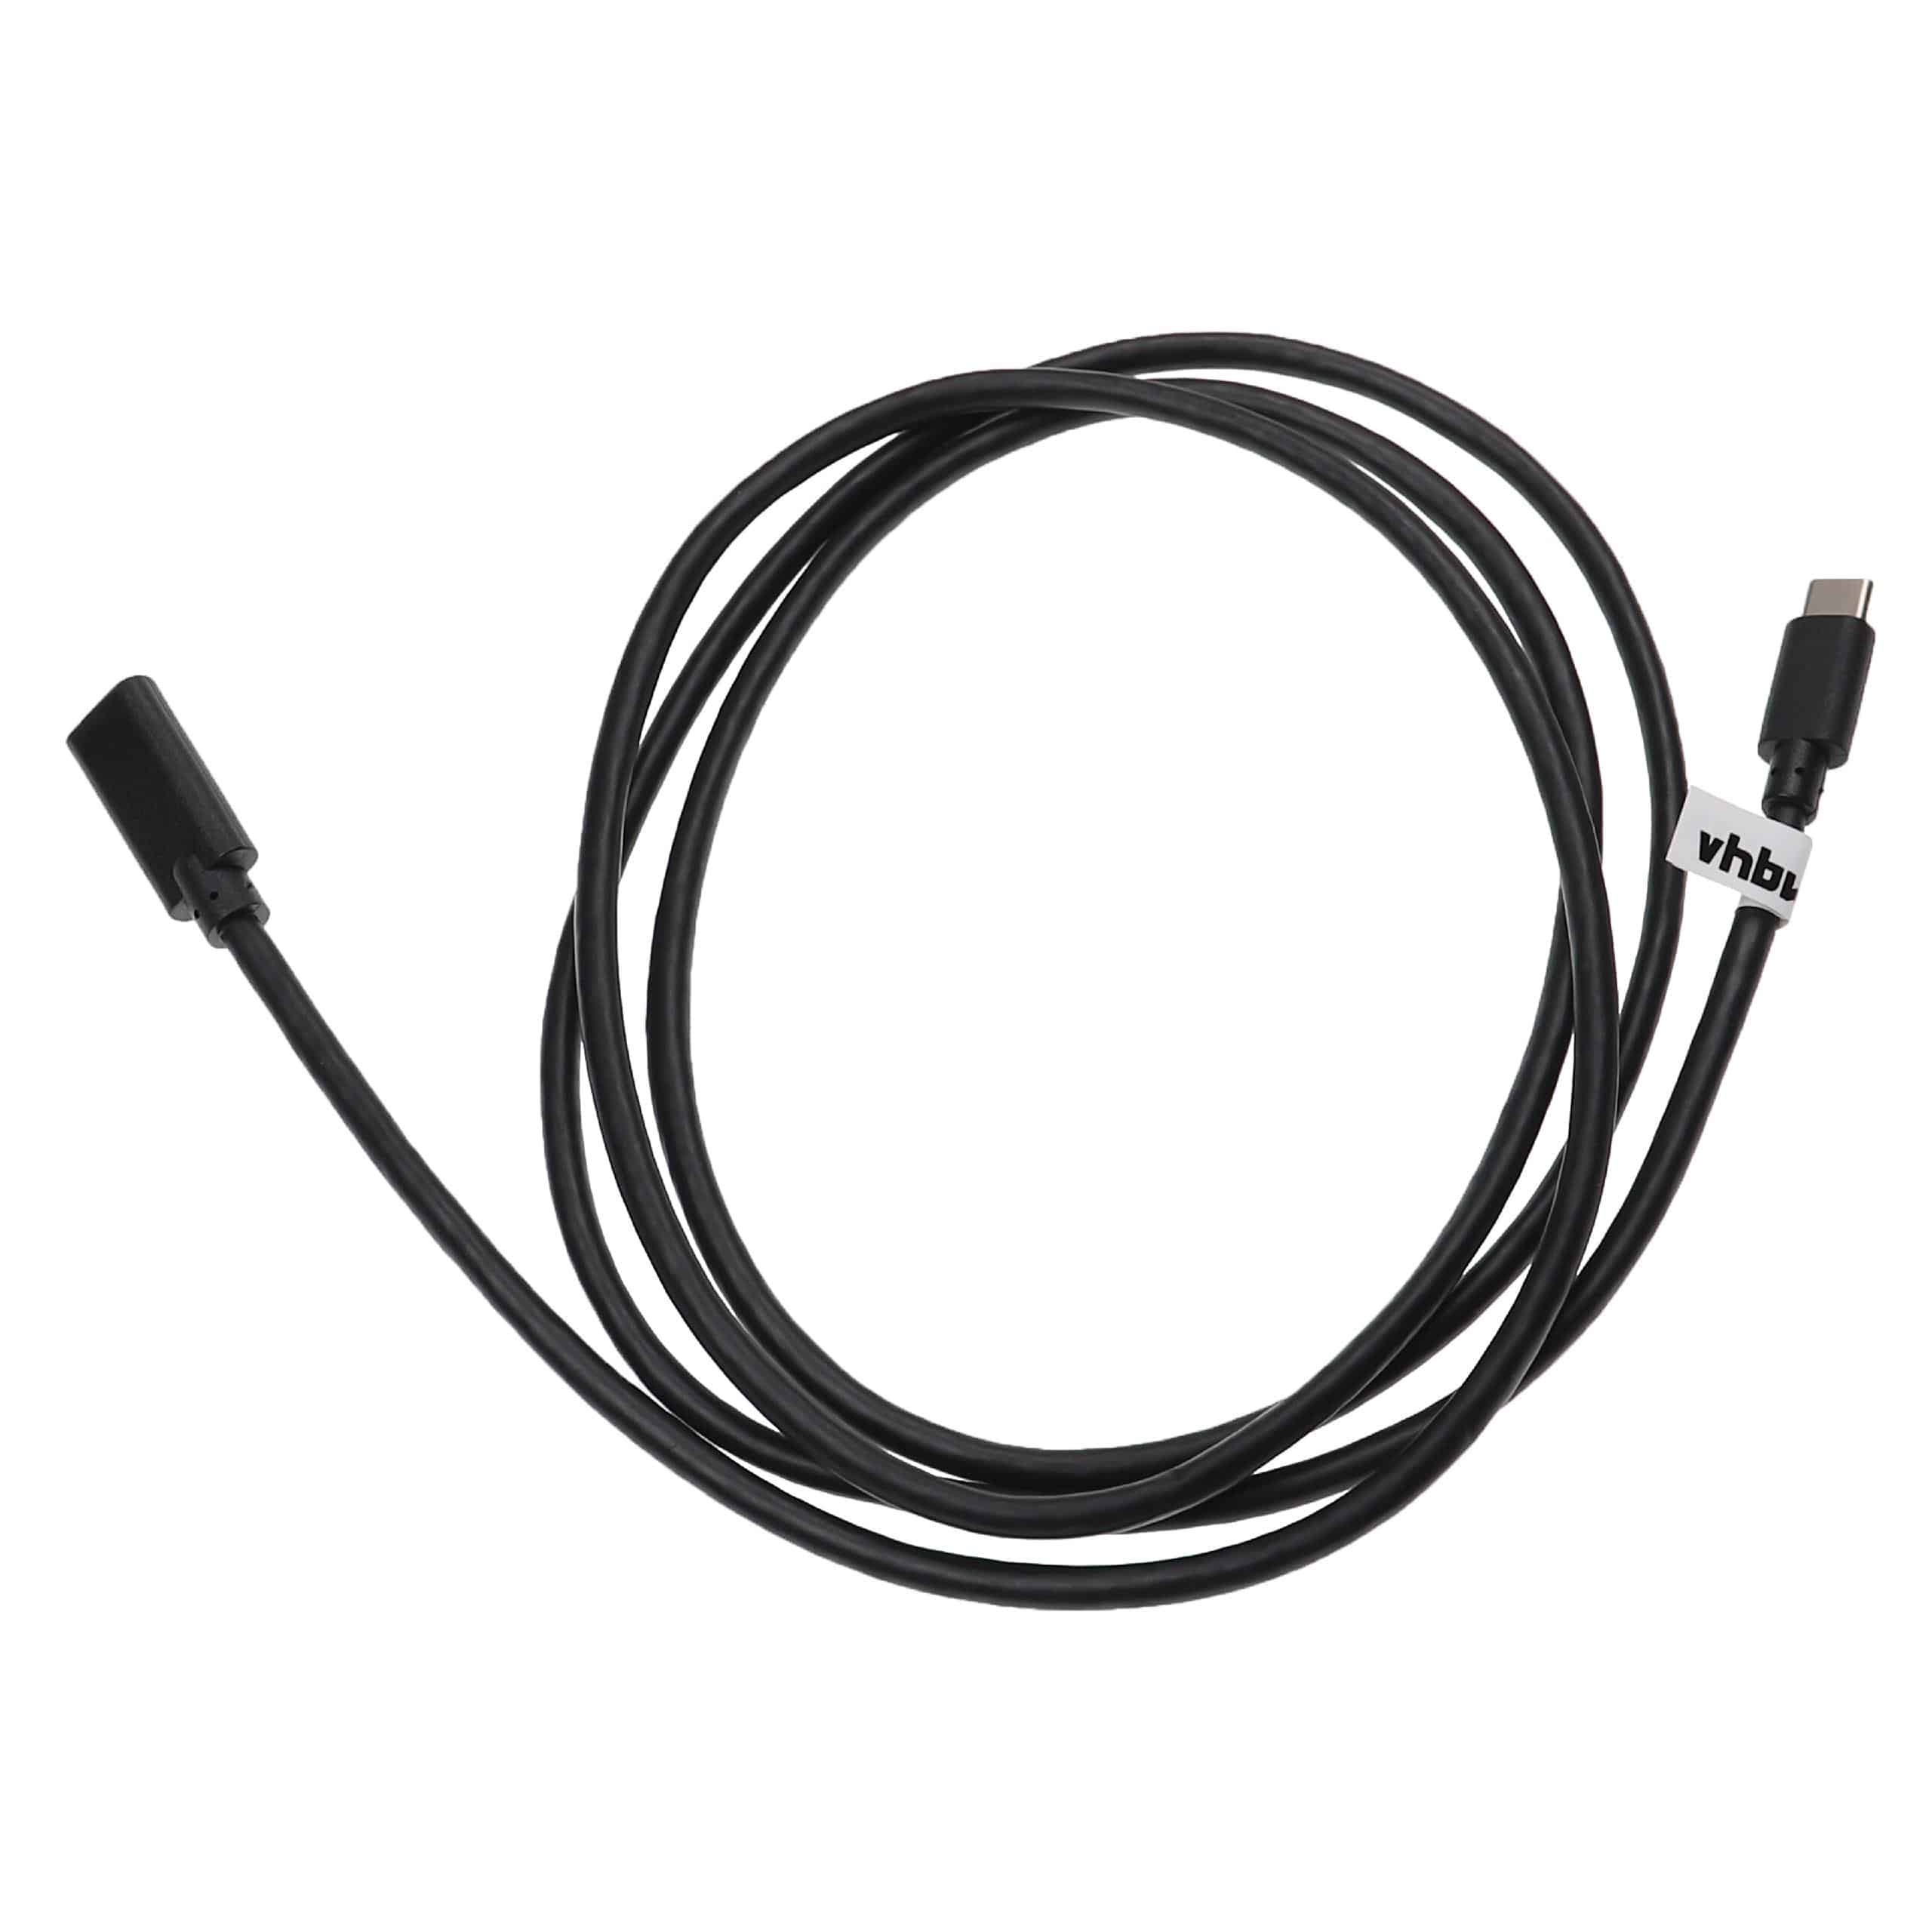 USB-C do notebooków, smartfonów, tabletów, PC - 1,5 m, czarny, kabel USB 3.1 C 